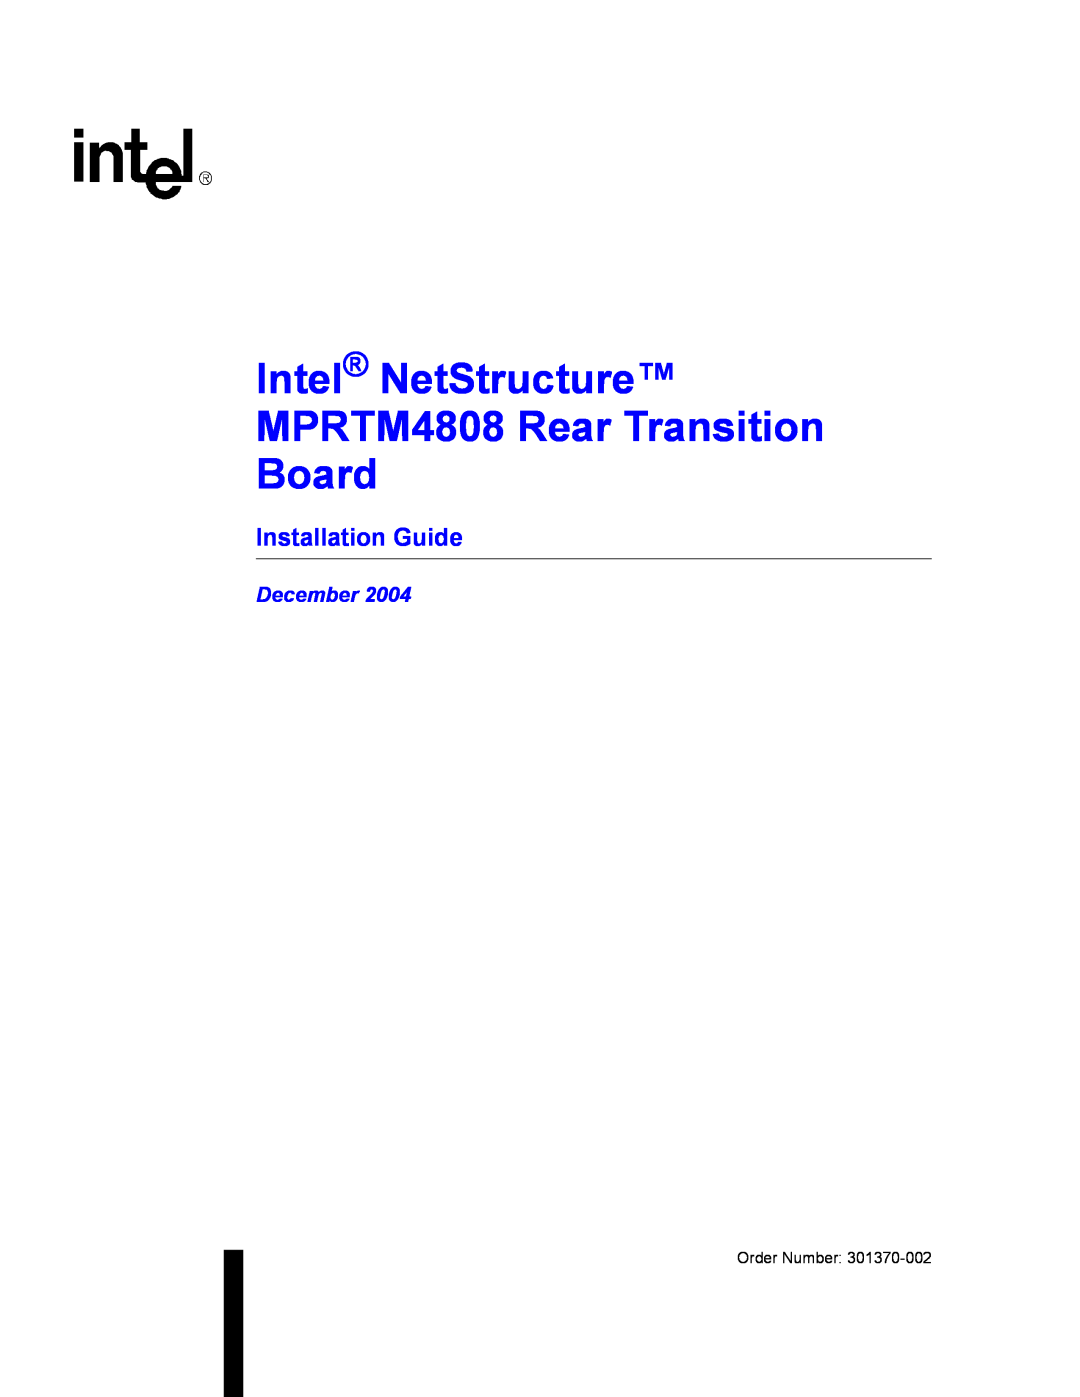 Intel manual Installation Guide, Intel NetStructure MPRTM4808 Rear Transition, Board, December 